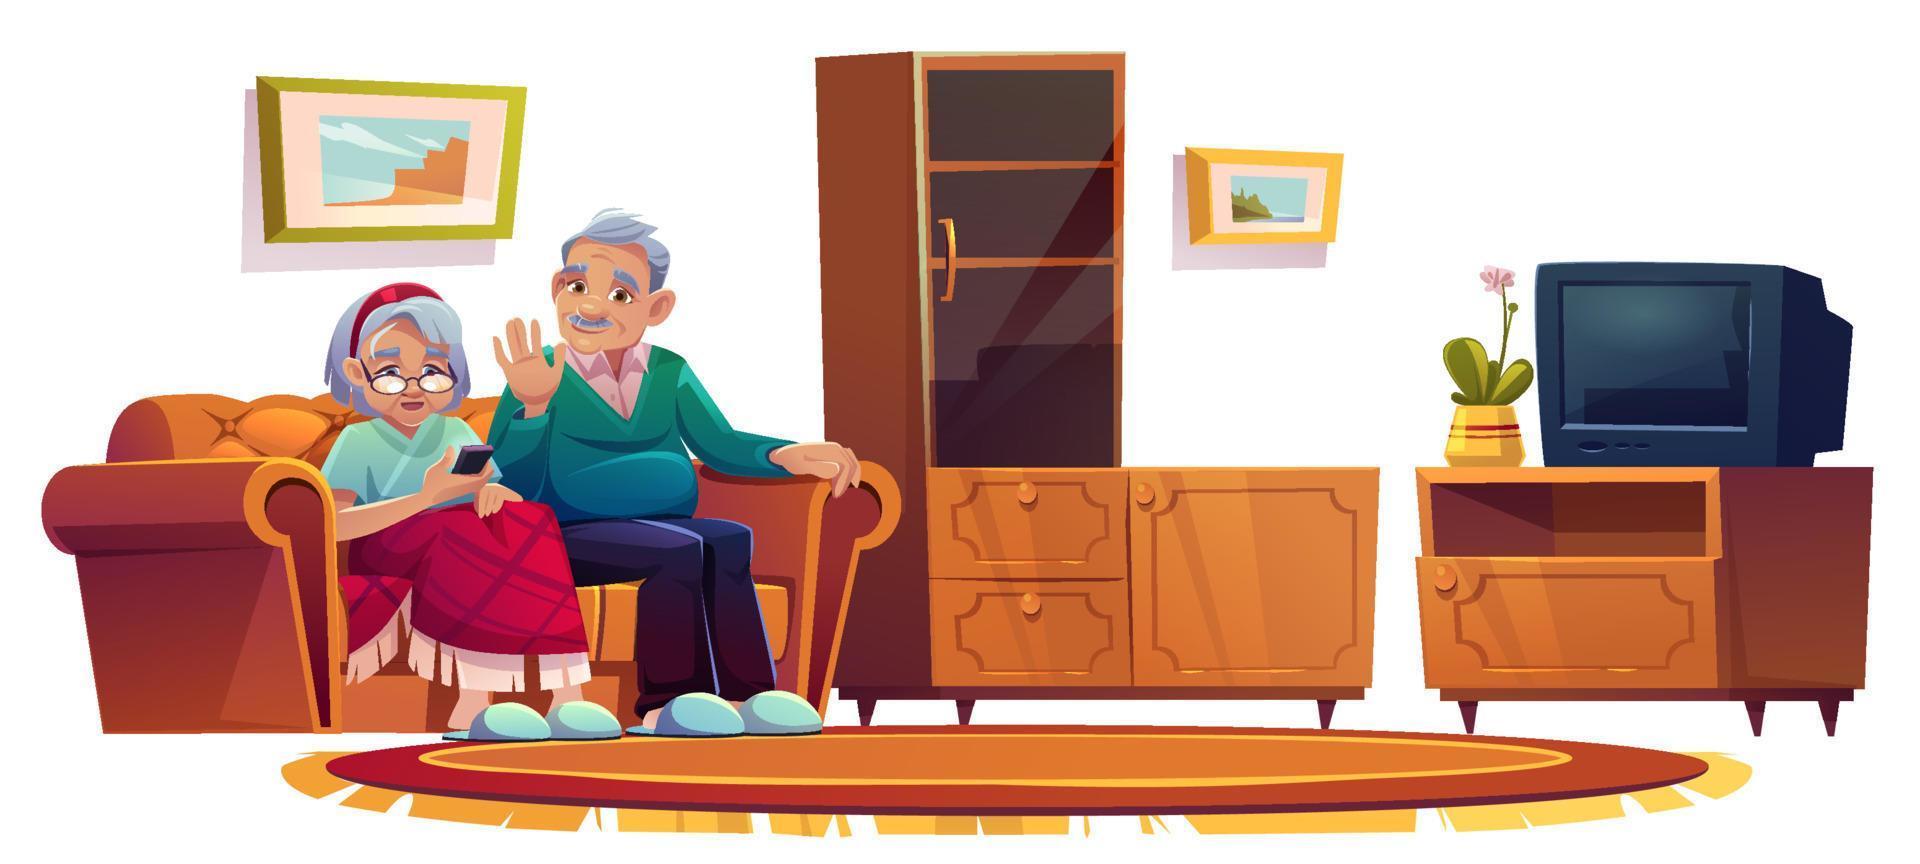 Old people in room in nursing home vector